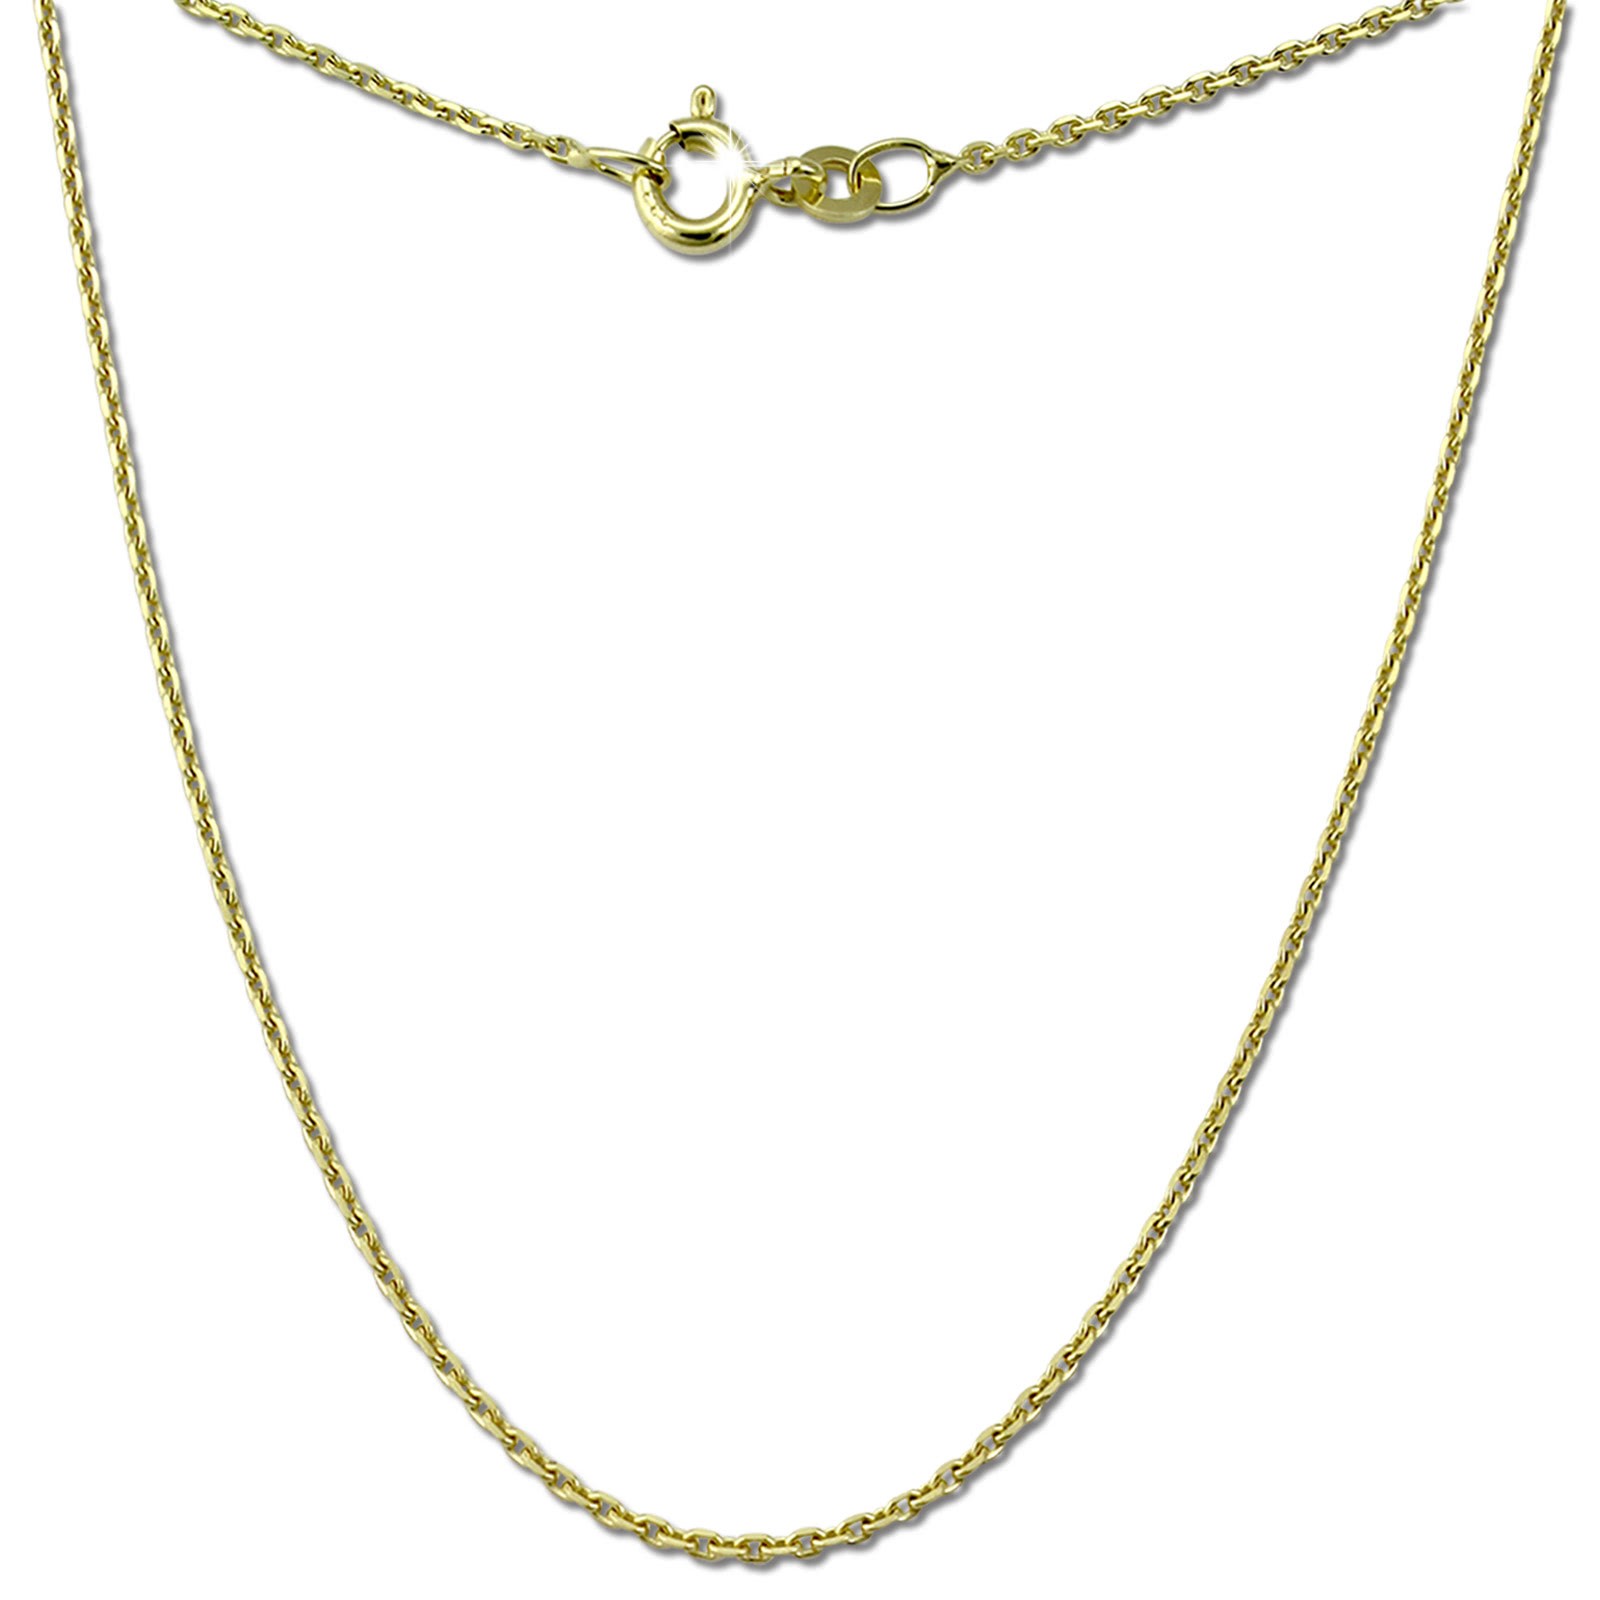 GoldDream Damen Colliers Halskette 42cm Gelbgold 8 Karat GDKB00342Y